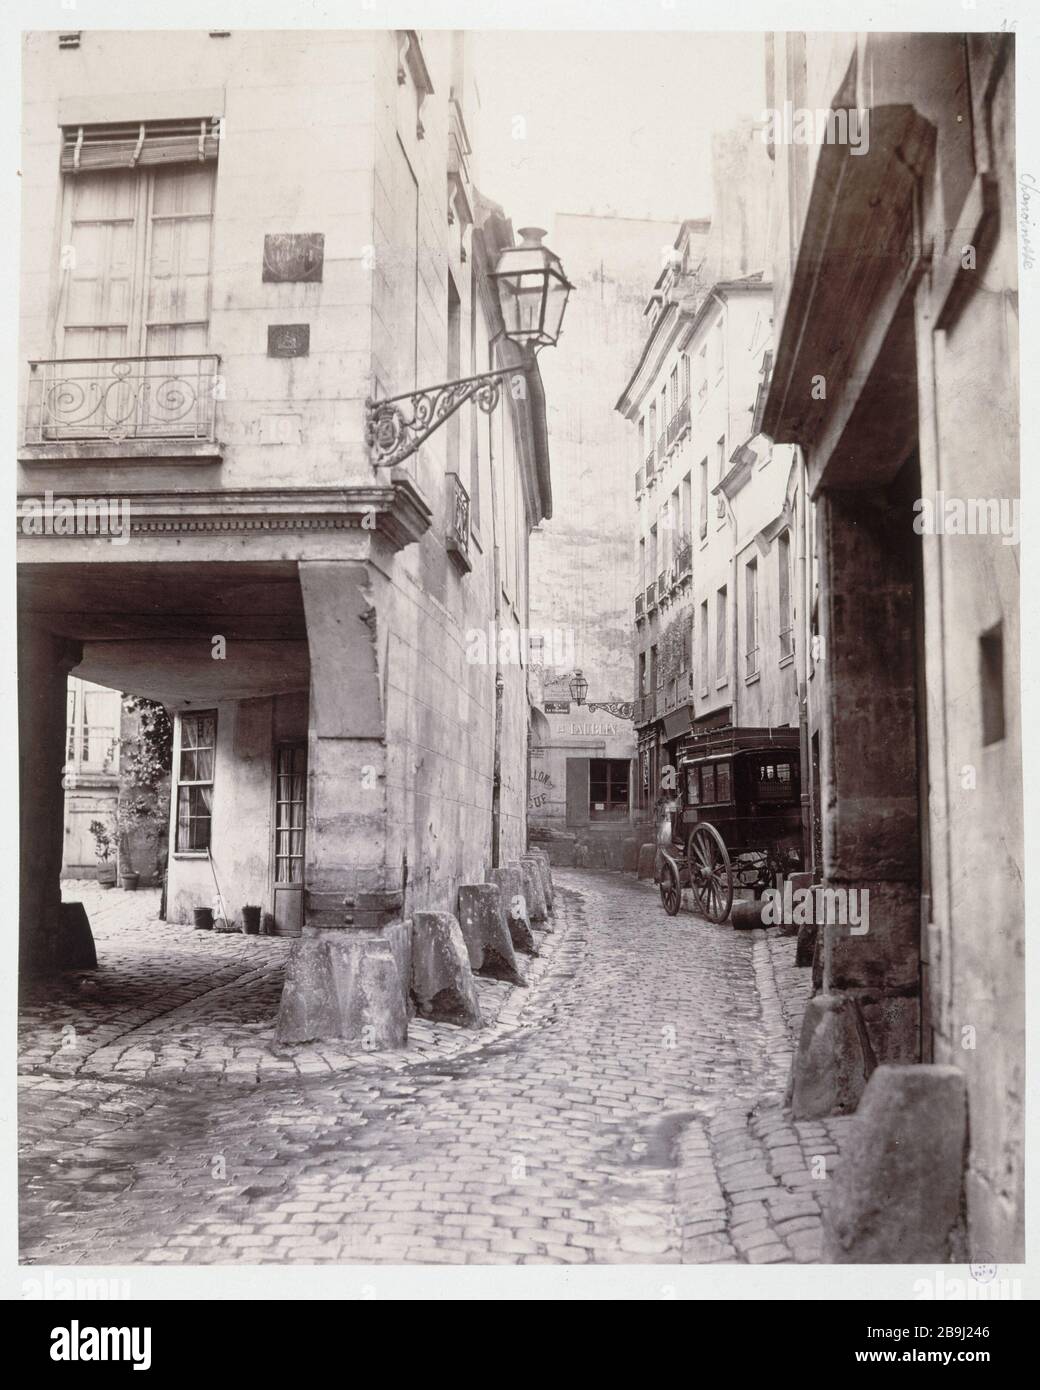 Rue Chanoinesse rue Chanoinesse (vers la rue de la Colombe). Paris (IVème arr.), vers 1865. Photo de Charles Marville (1813-1879). Paris, musée Carnavalet. Banque D'Images